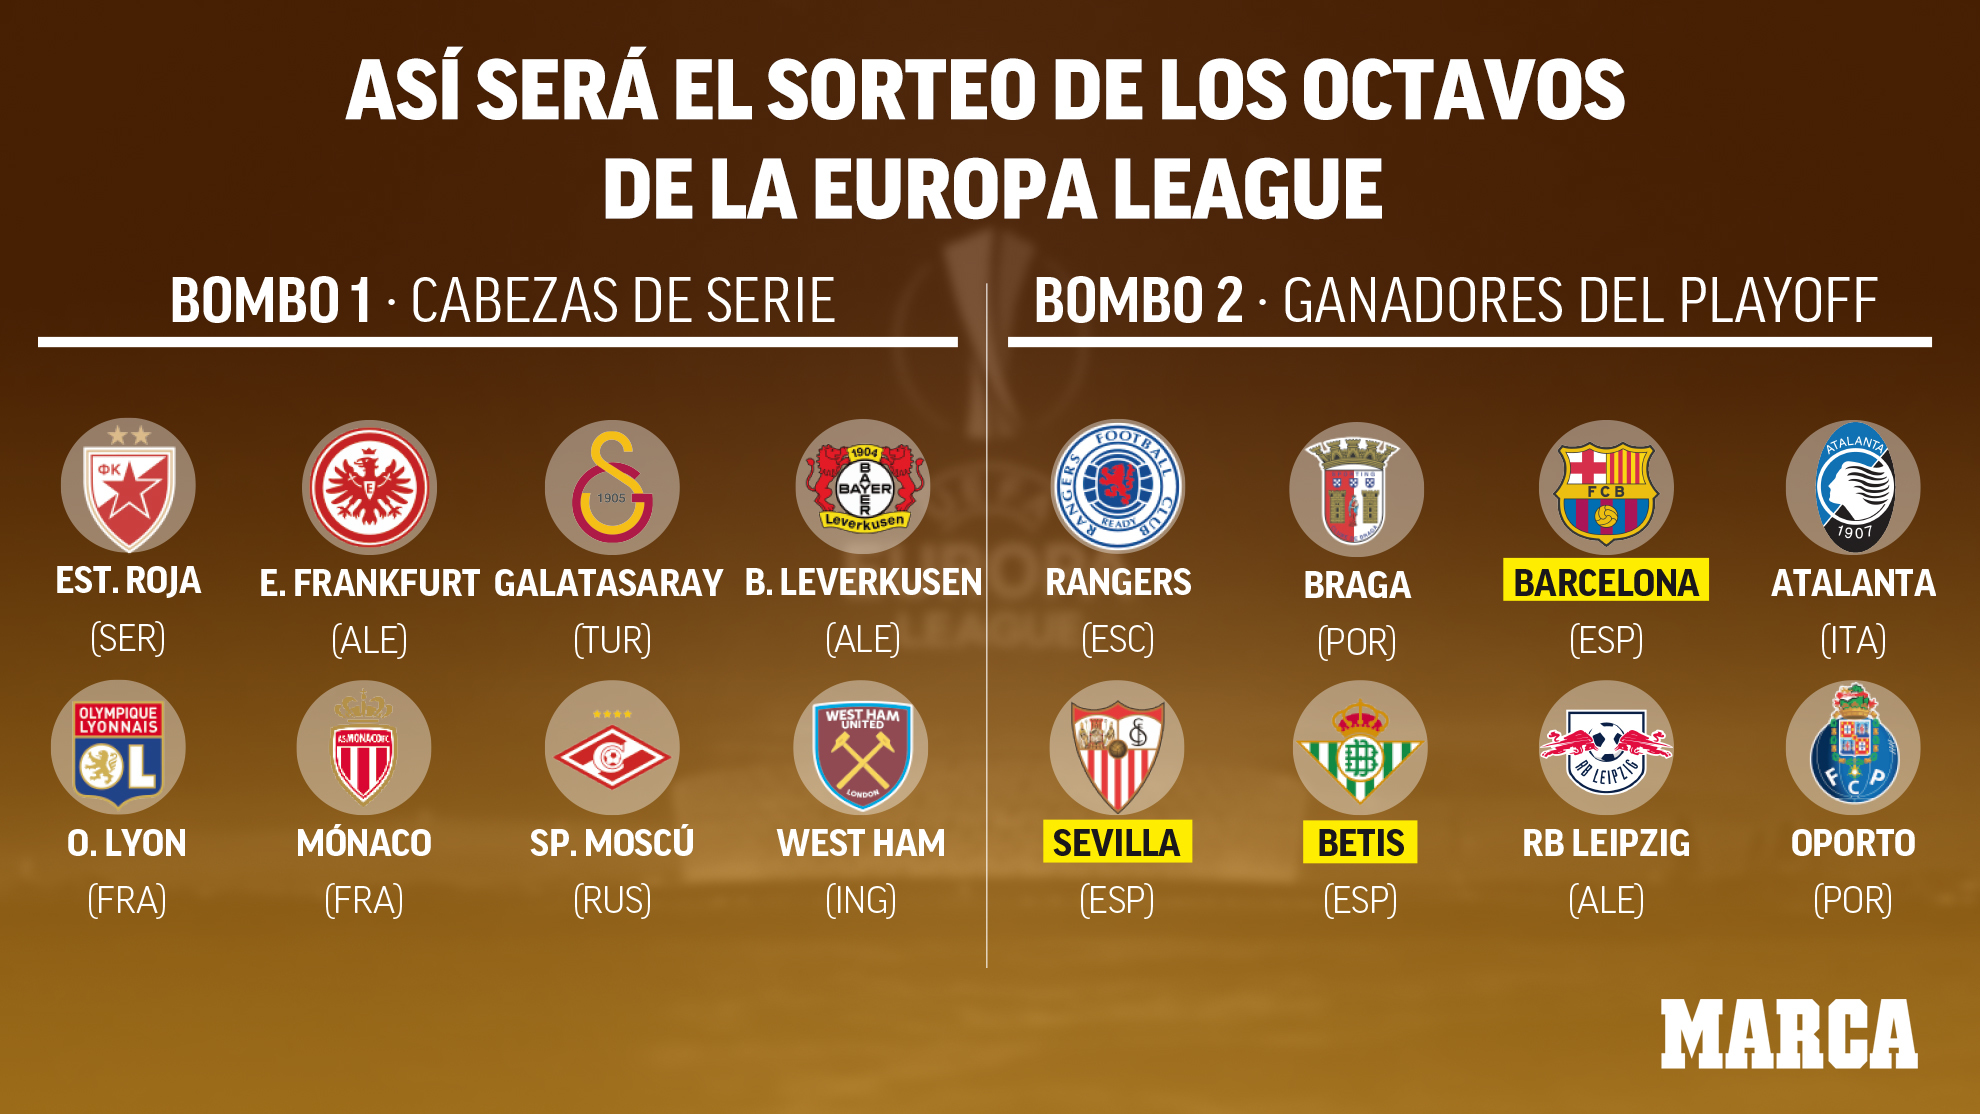 ¿Cómo se escogen los equipos de la Europa League